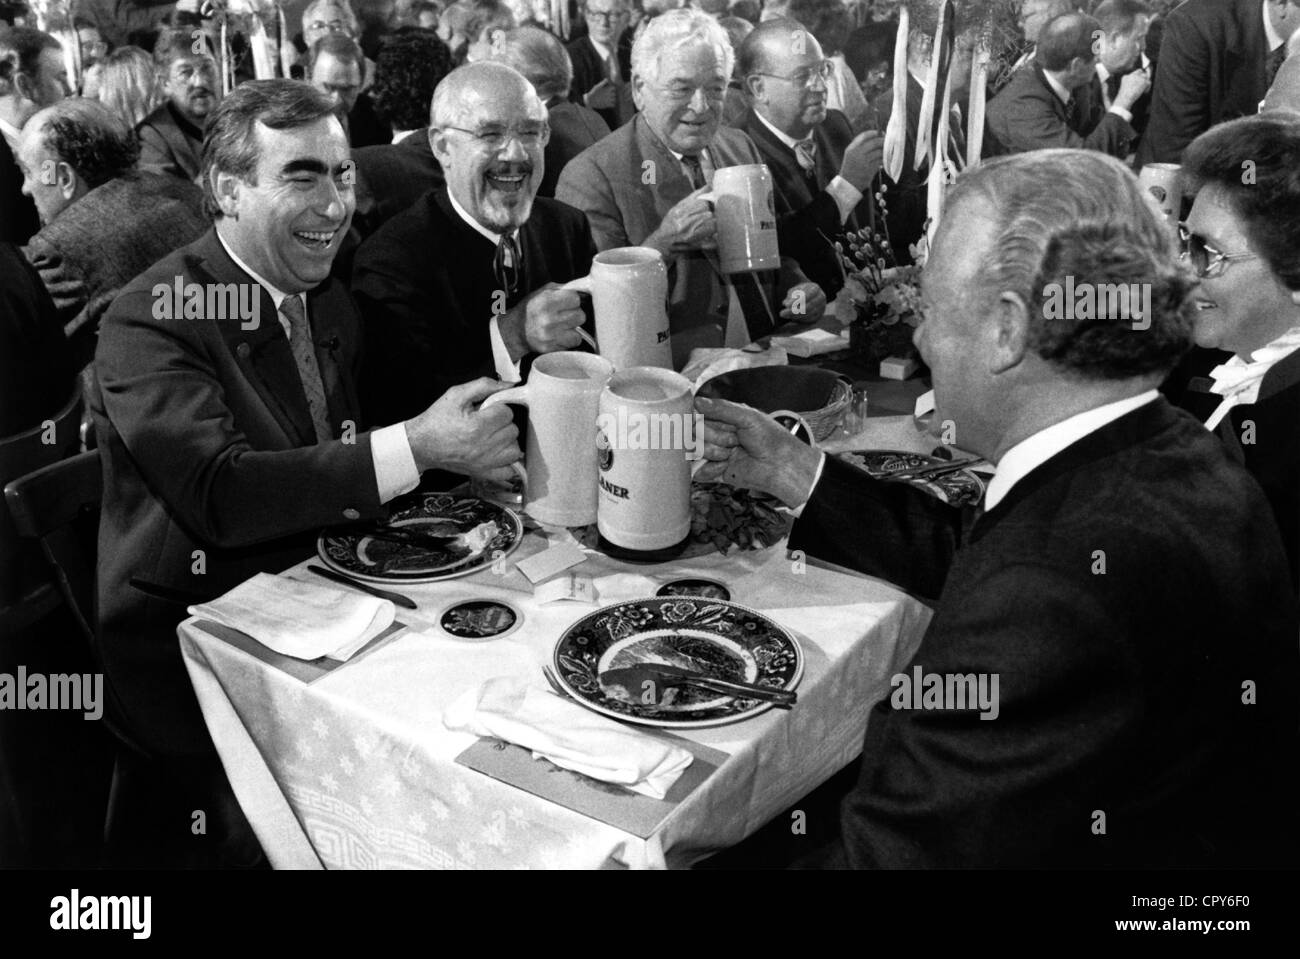 Waigel, Theo, * 24.4.1939, deutscher Politiker (CSU), halbe Länge, als Bundesfinanzminister, mit Max Streibl und Hans 'Johnny' Klein, Bier trinkend, 1991, Stockfoto